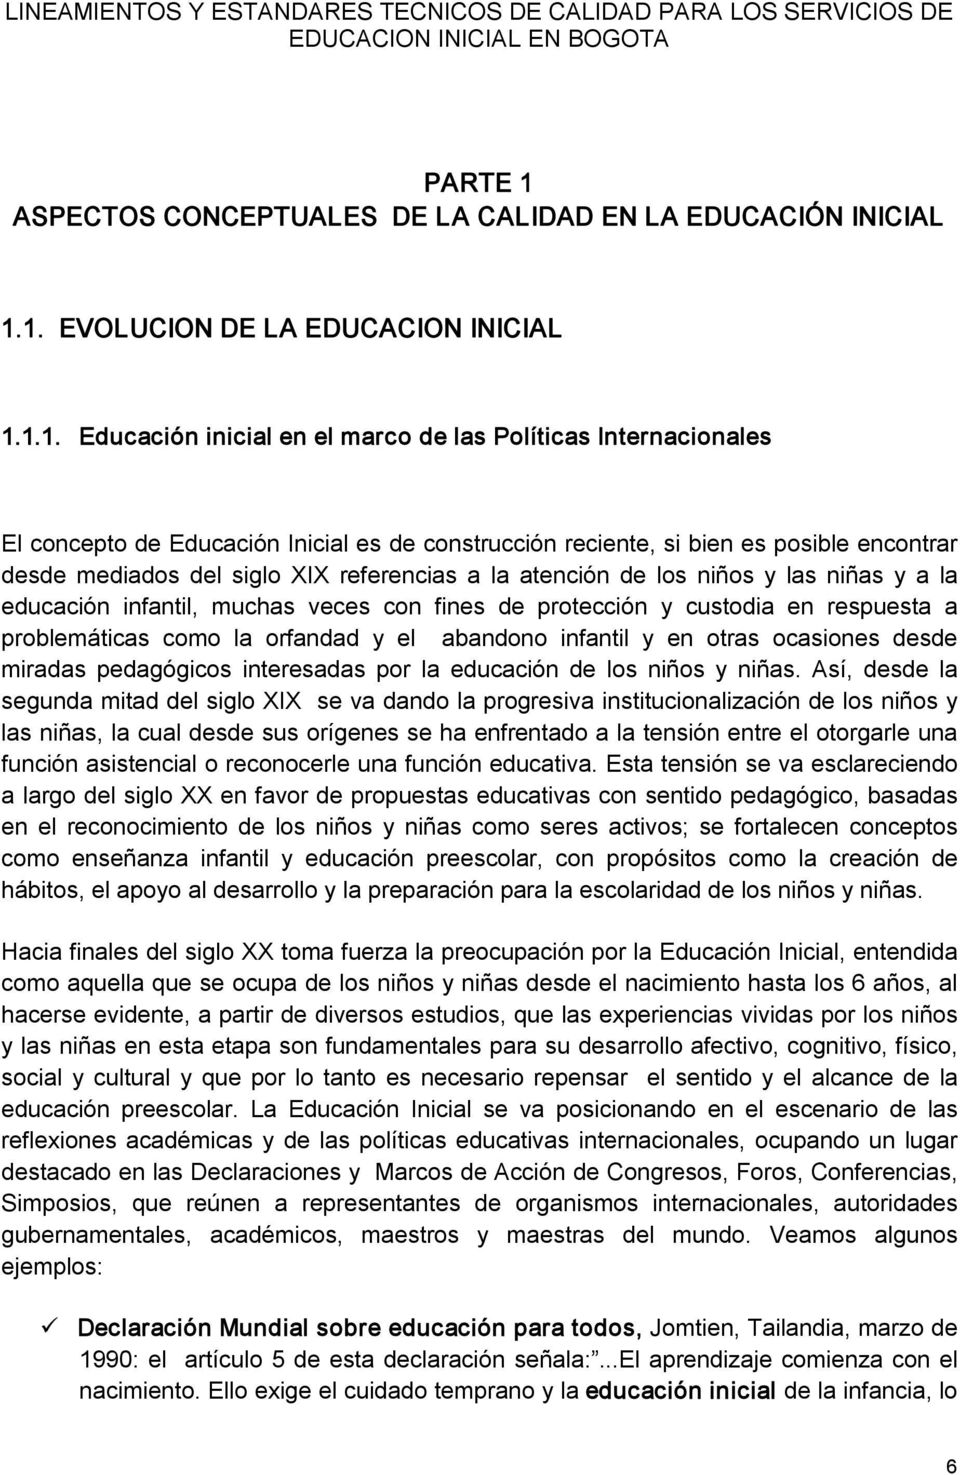 1. EVOLUCION DE LA EDUCACION INICIAL 1.1.1. Educación inicial en el marco de las Políticas Internacionales El concepto de Educación Inicial es de construcción reciente, si bien es posible encontrar